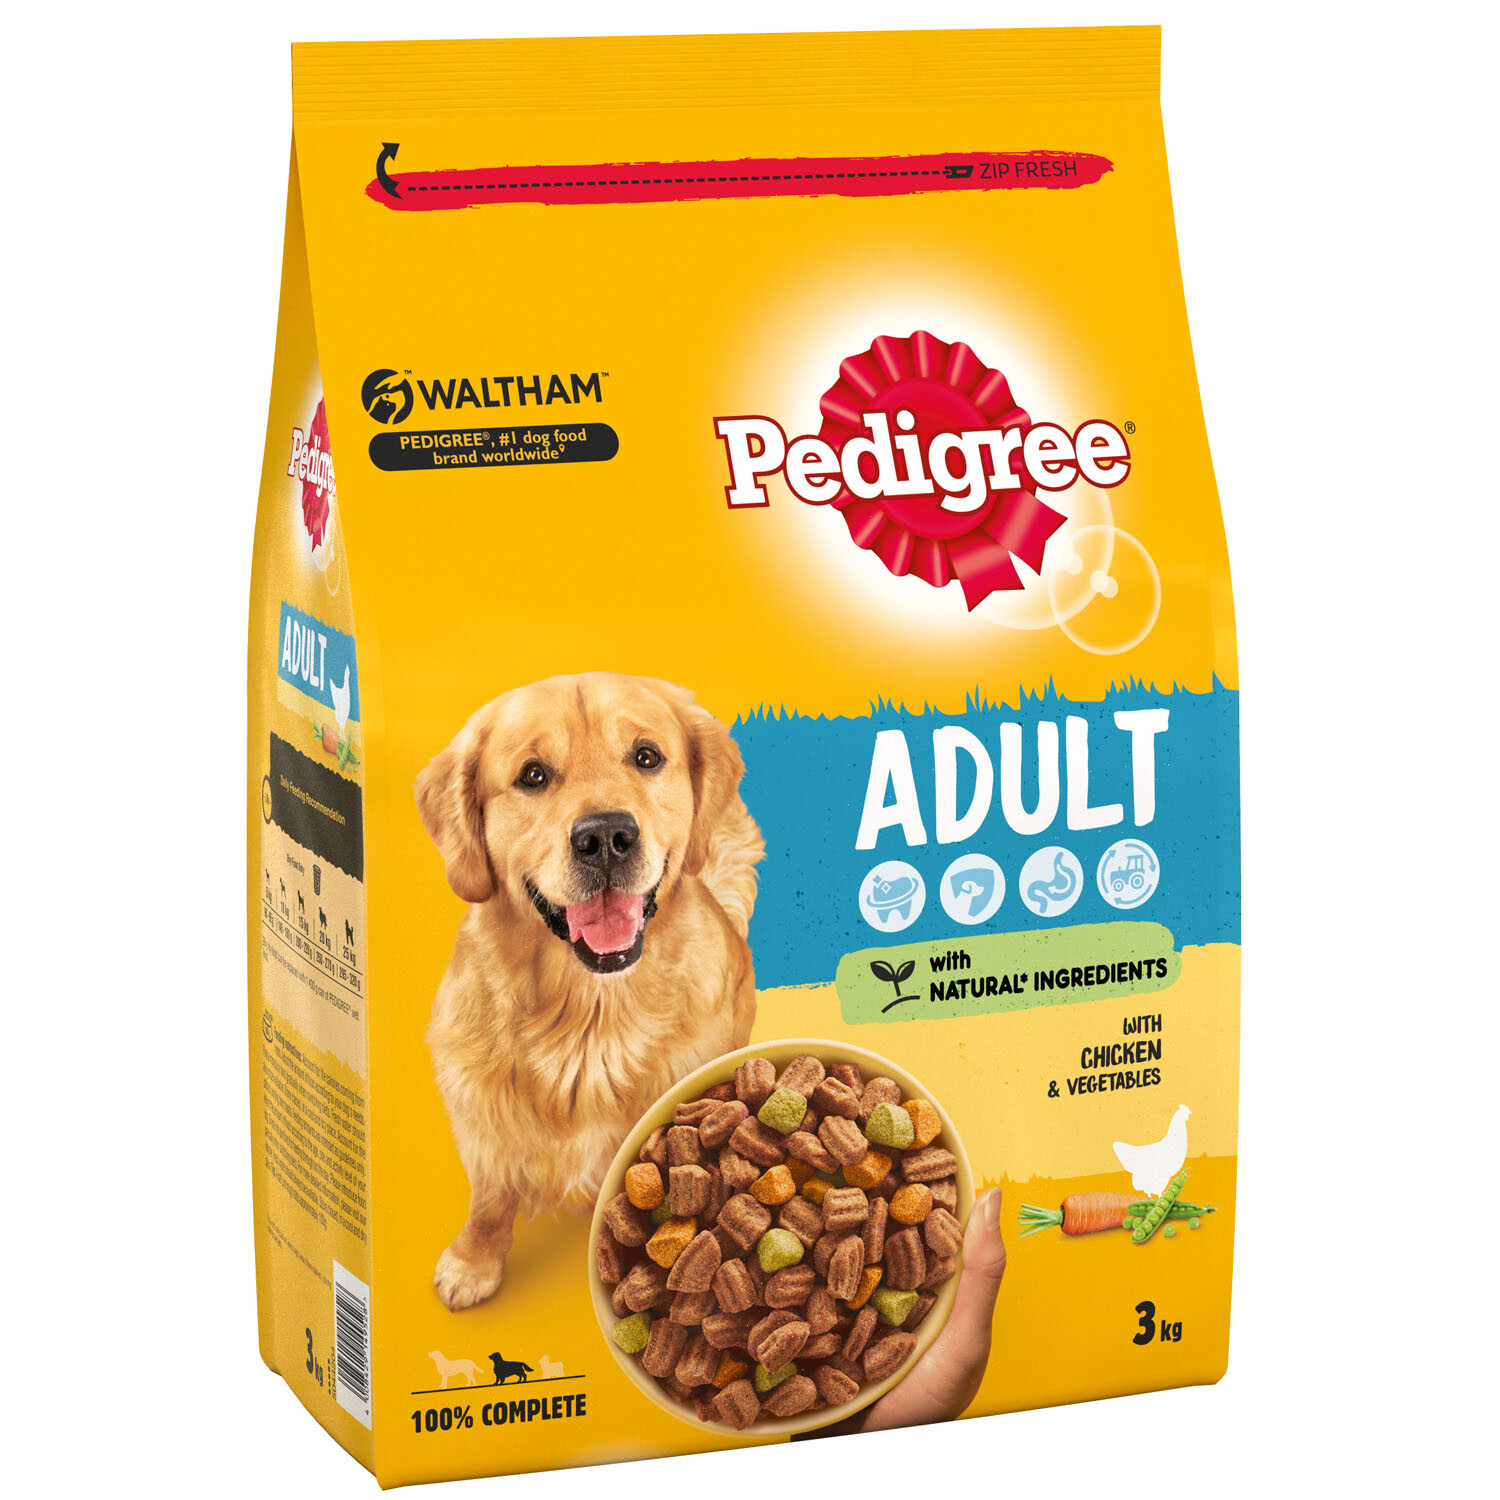 Pedigree Complete Chicken and Vegetables Adult Dry Dog Food 3kg Image 1